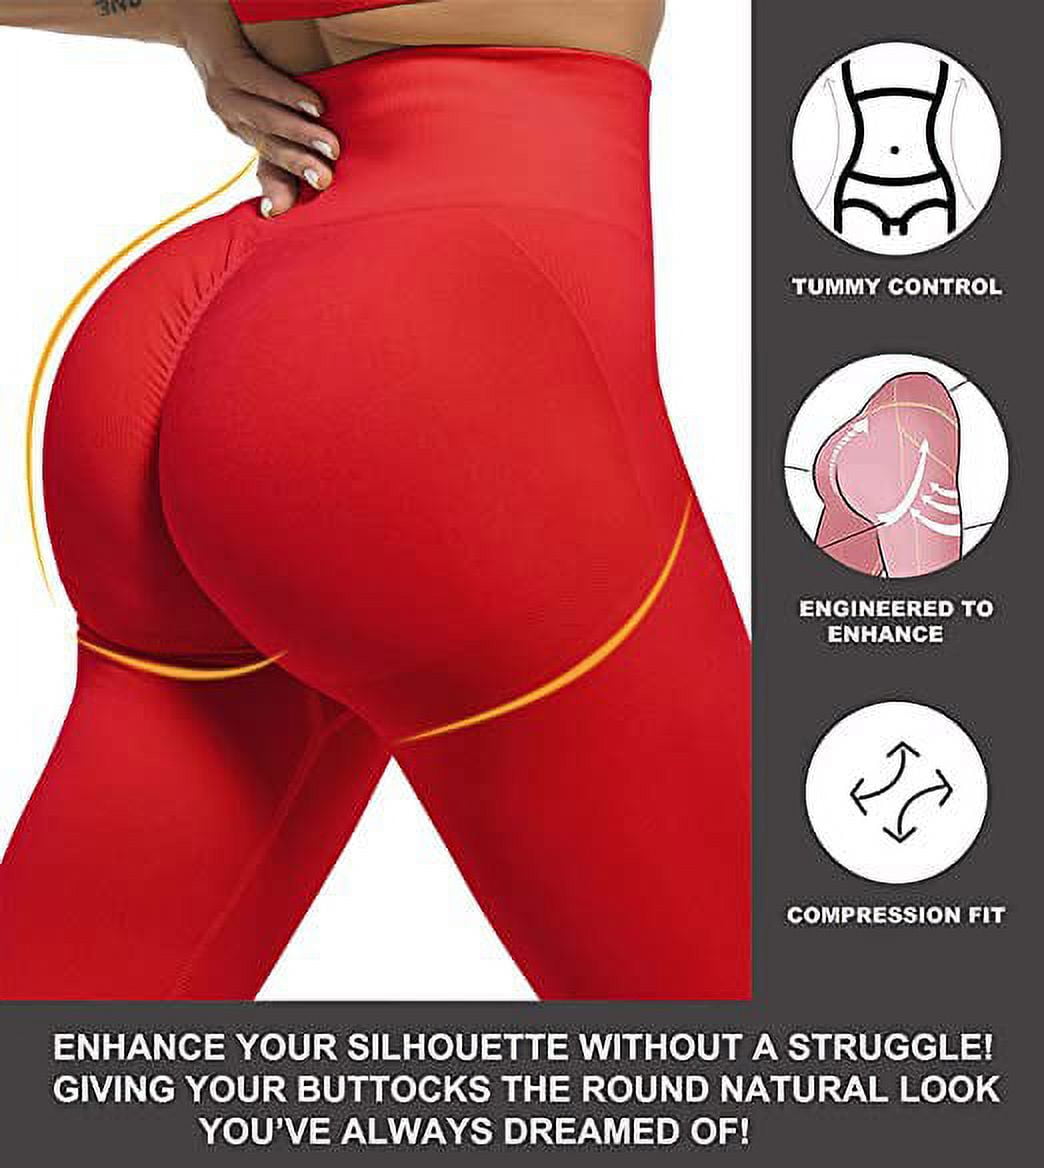 POP CLOSETS Women Scrunch Butt Lift Seamless Leggings Tummy Control High  Waist Yoga Pants Gym Workout Tights 